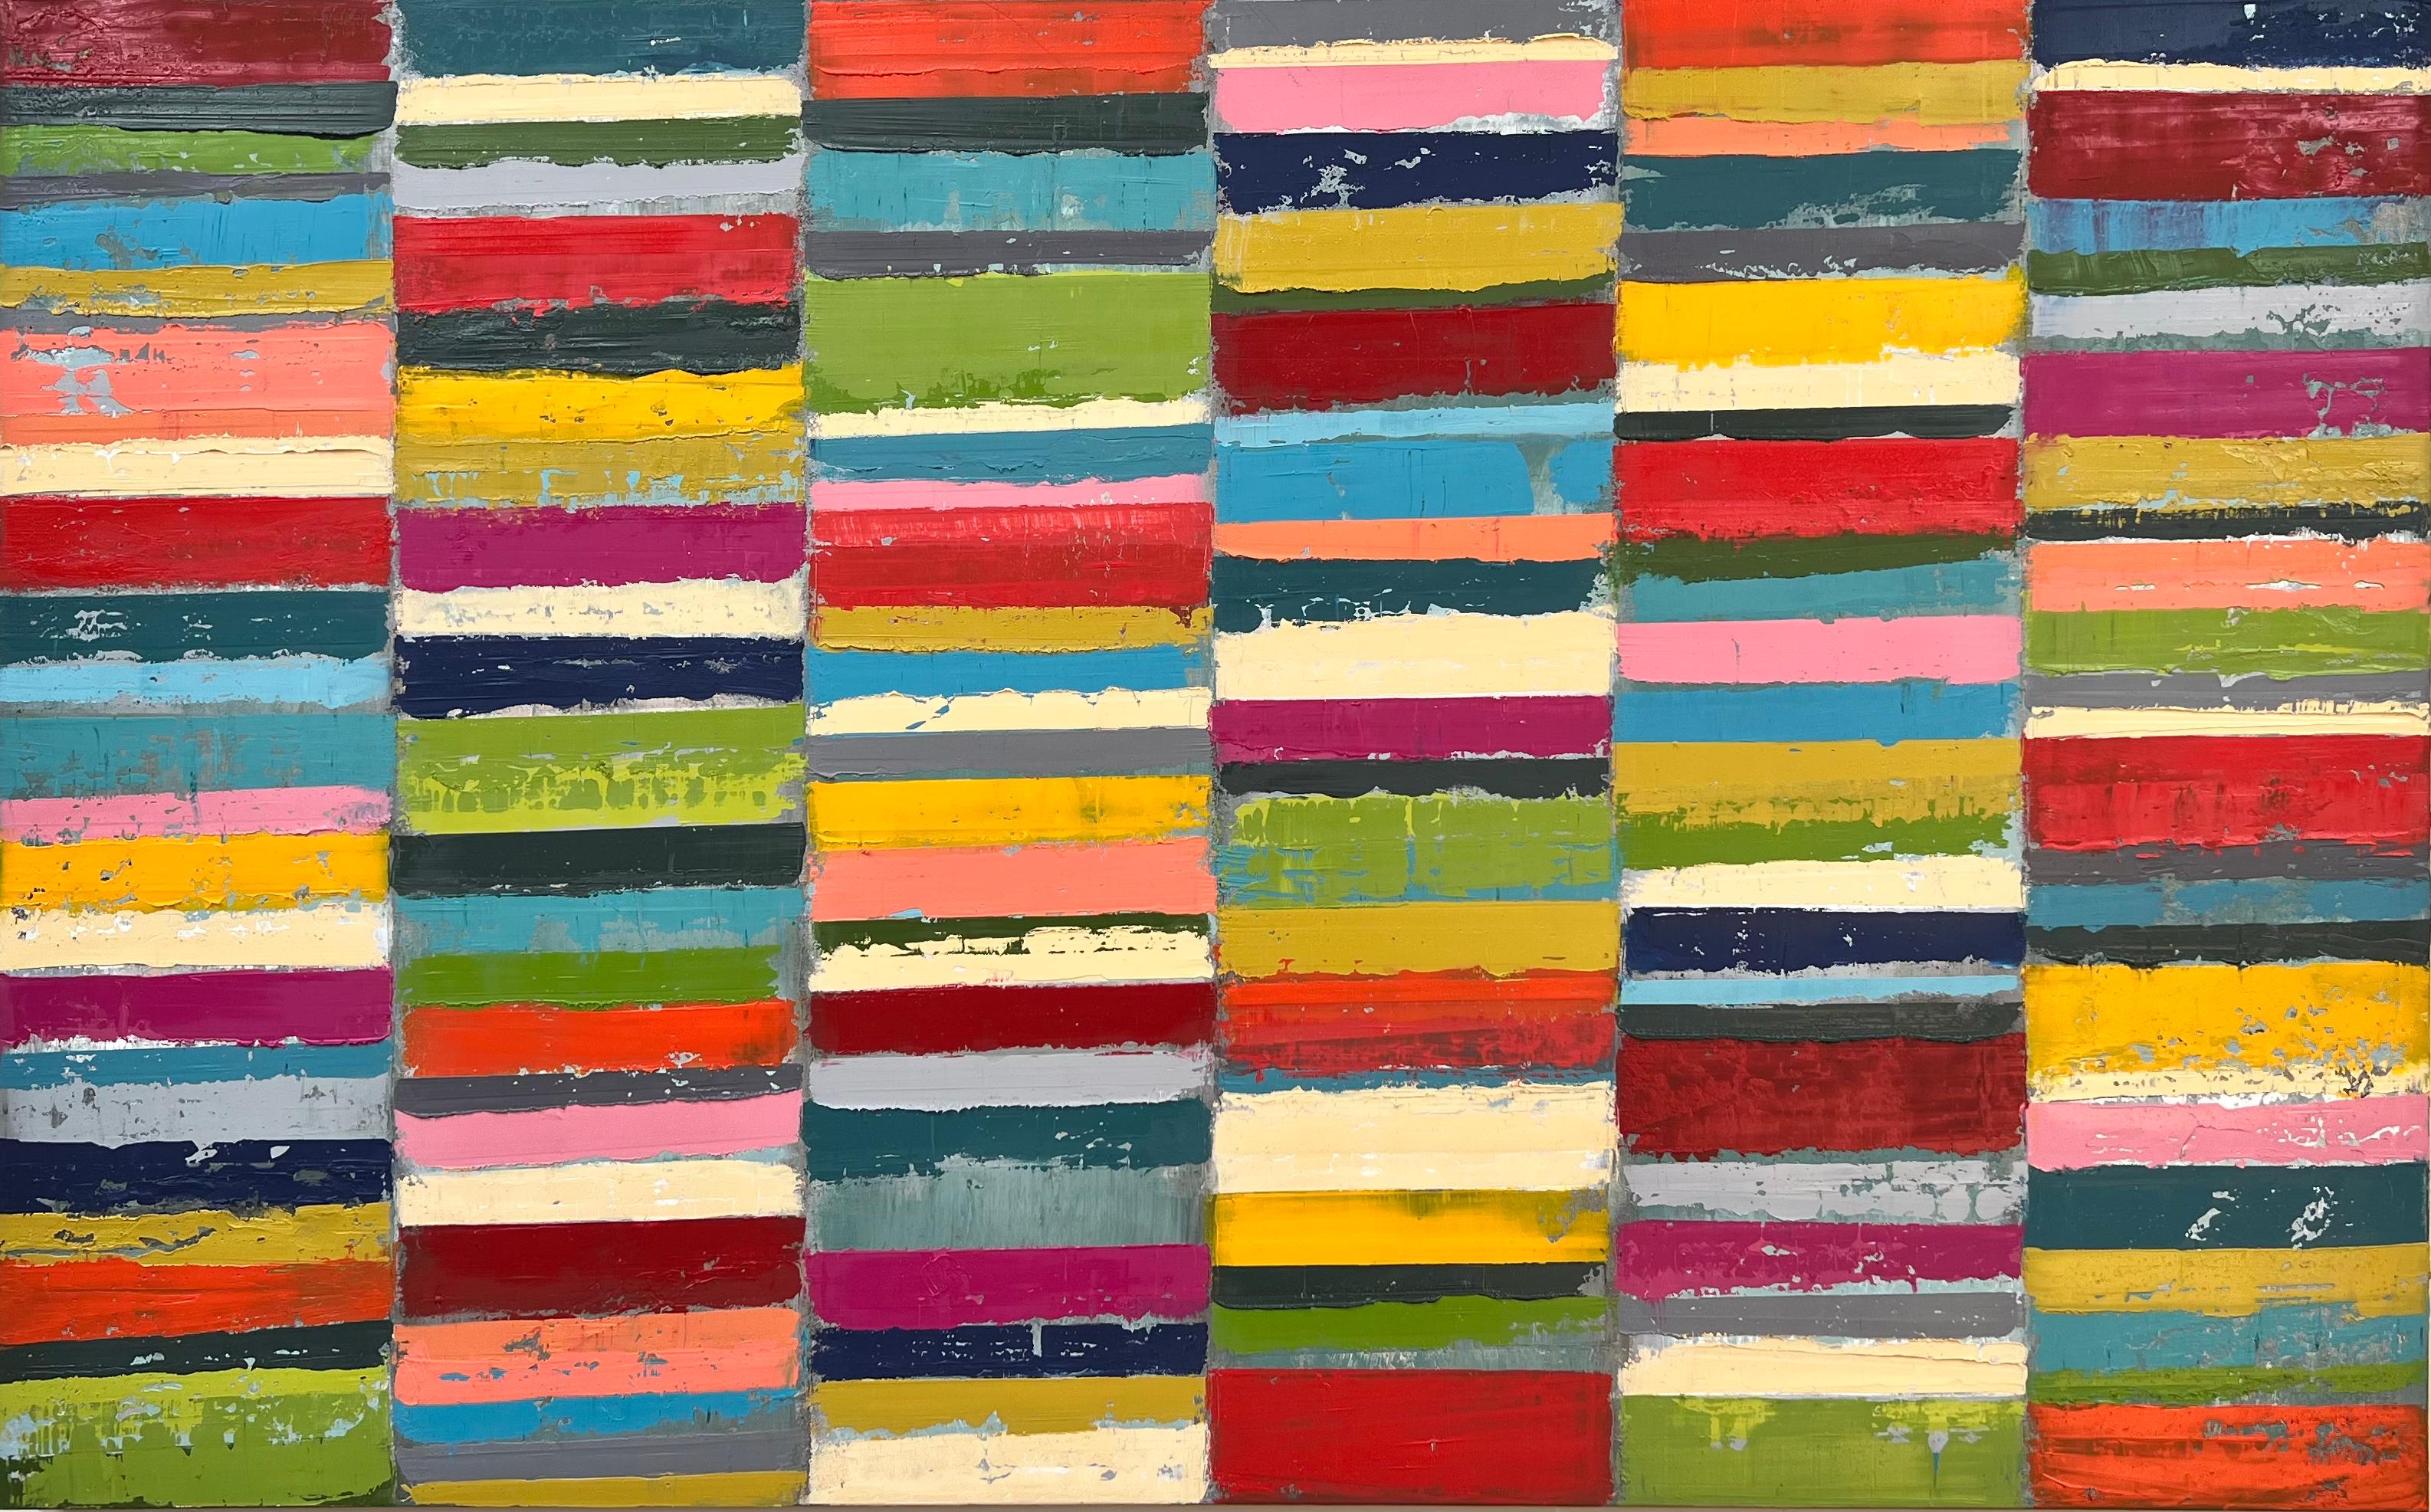 Abstract Painting Janet Hamilton - Gris de couleurs n° 3, peinture à l'huile abstraite